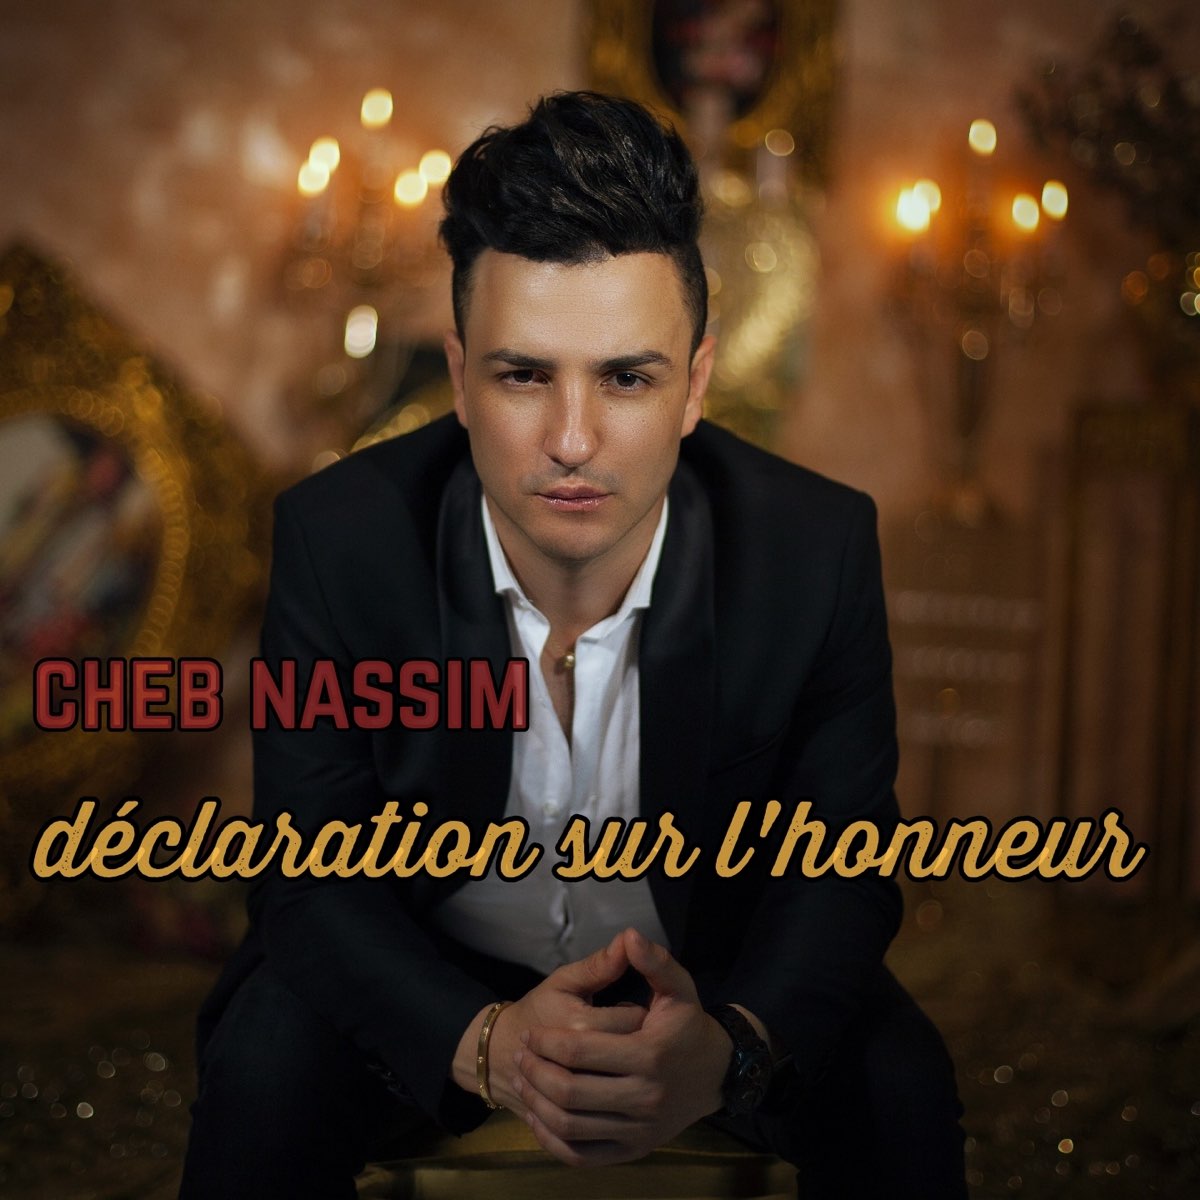 Déclaration sur l'honneur - Single - Album by Cheb Nassim - Apple Music